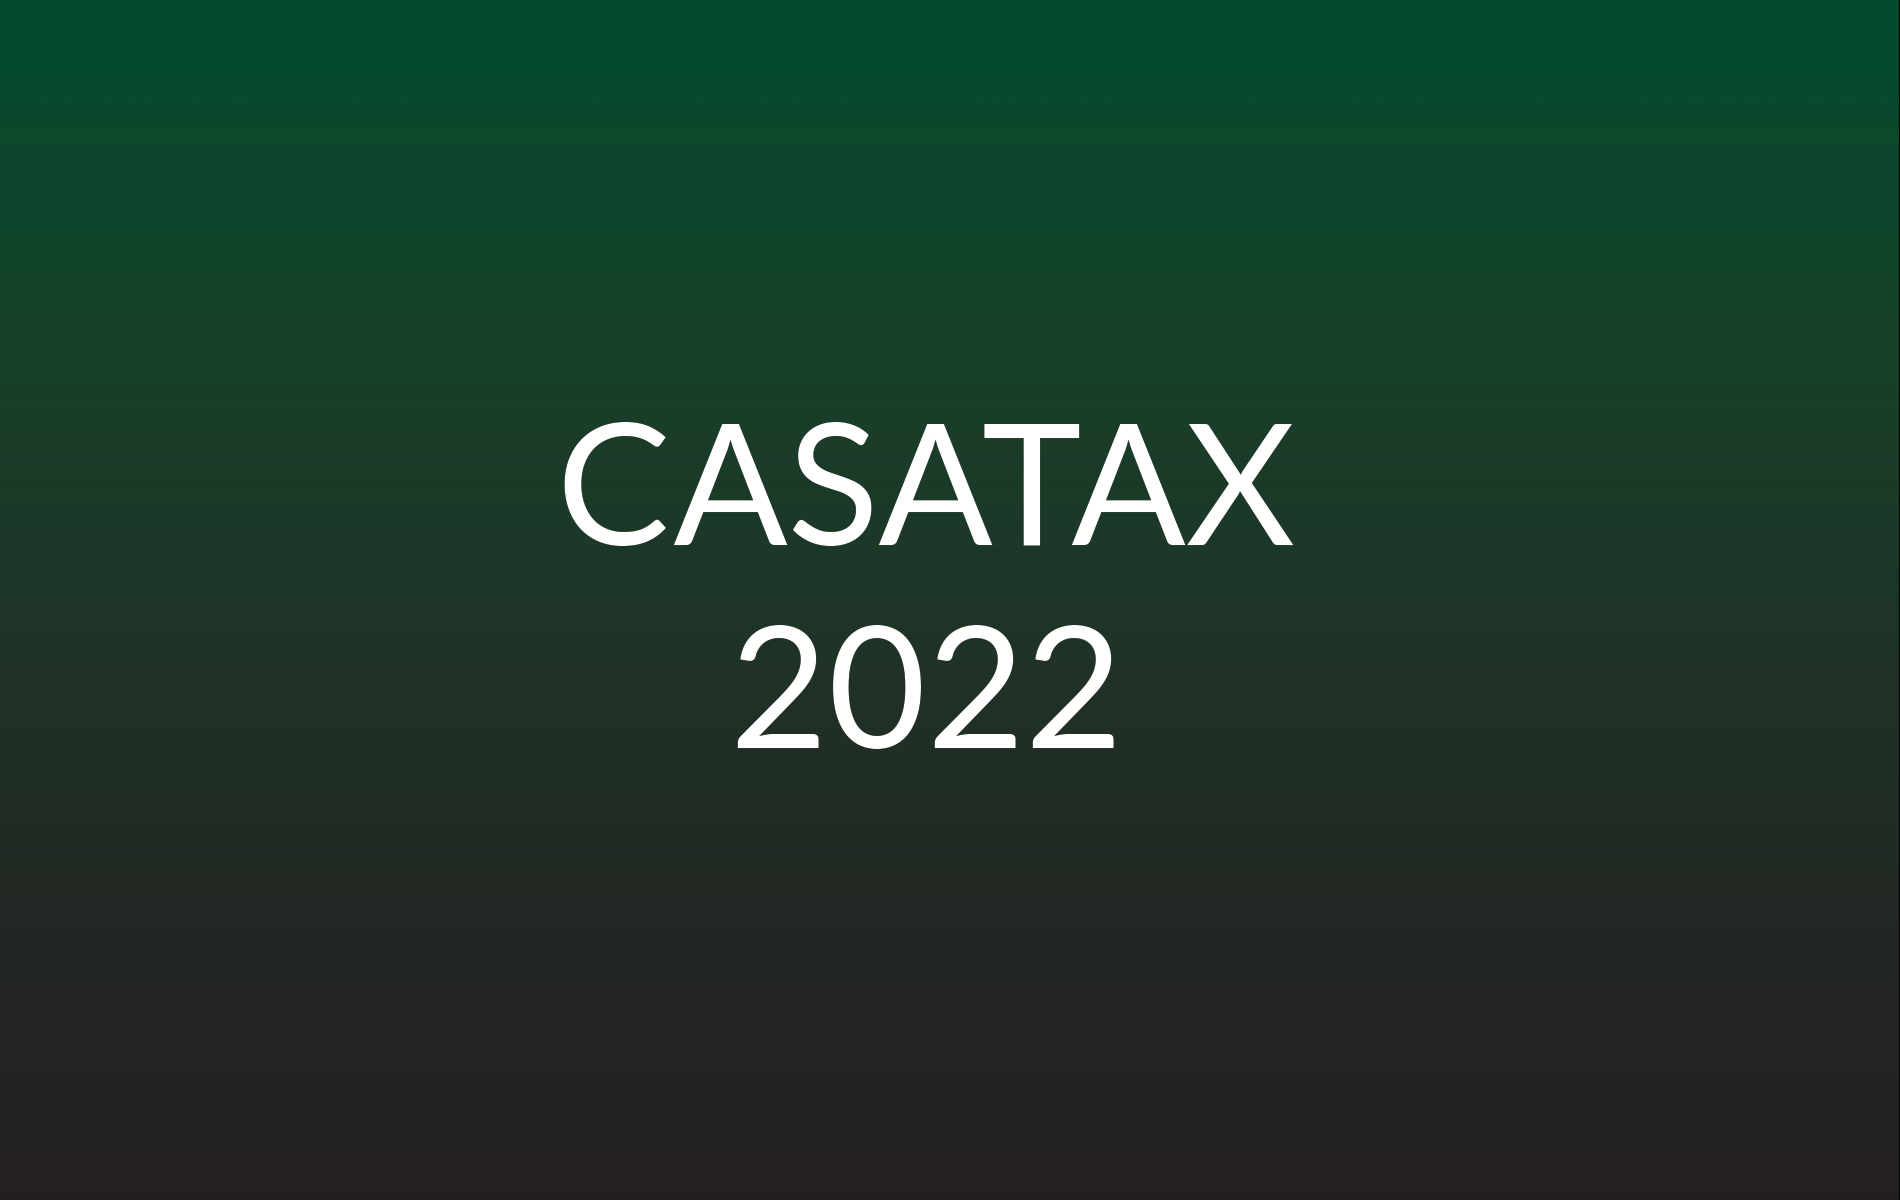 CASATAX 2022